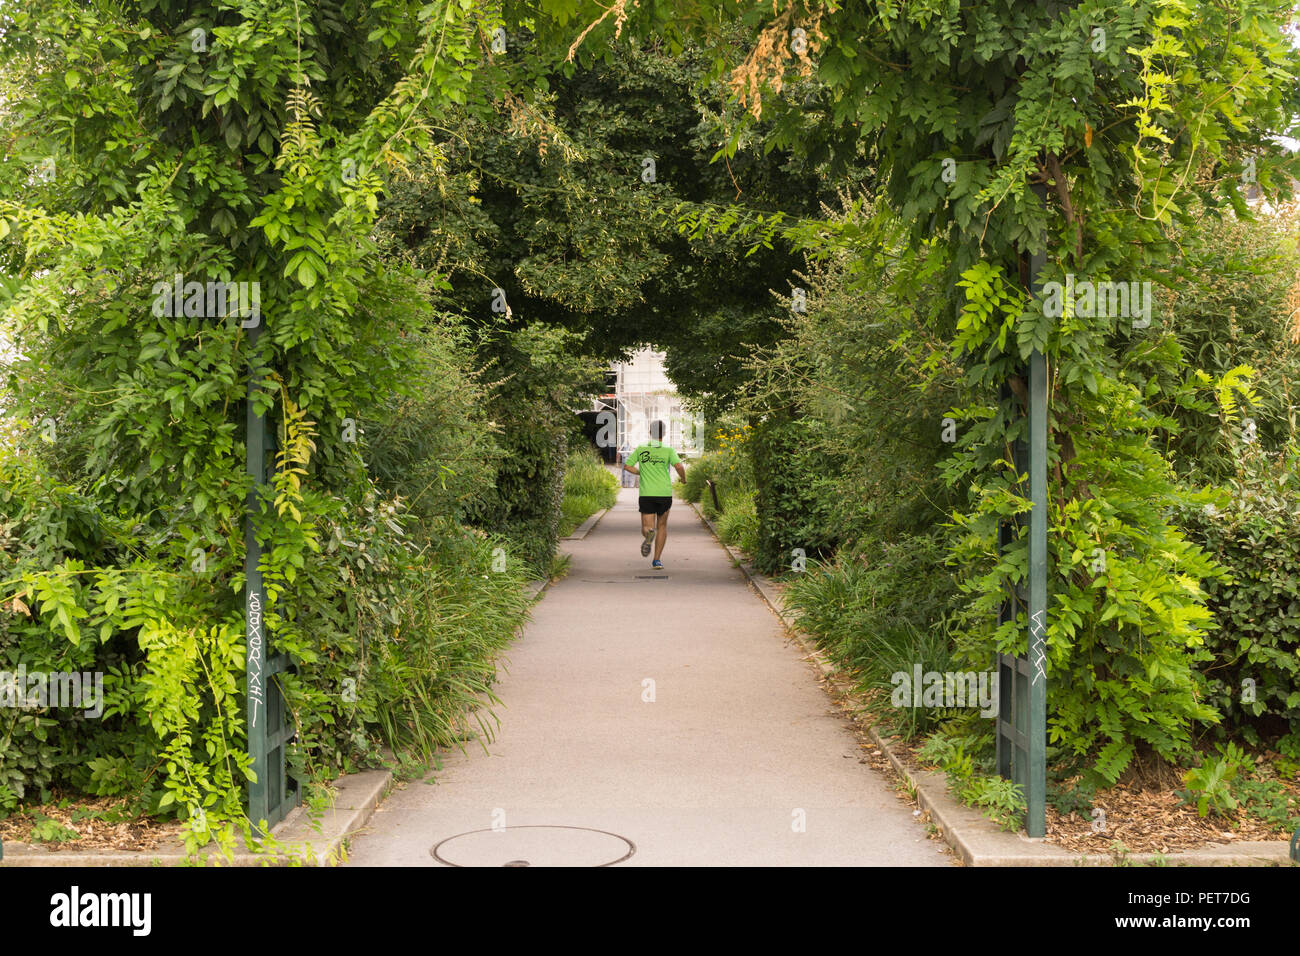 Paris Grün und städtischen Garten - Mann laufen entlang der Promenade plantee erhöhten Park im 12. arrondissement von Paris, Frankreich, Europa. Stockfoto